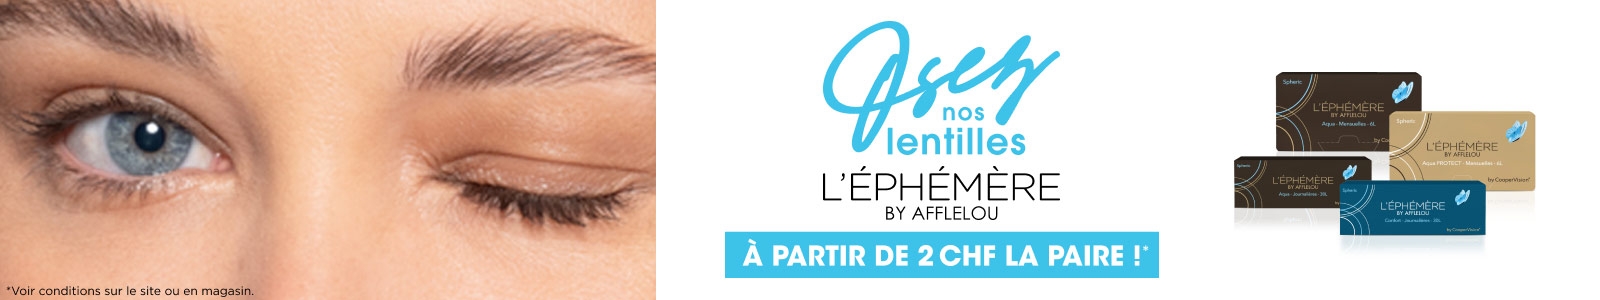 Osez nos lentilles L'Ephémère by Afflelou à partir de 1 CHF la paire